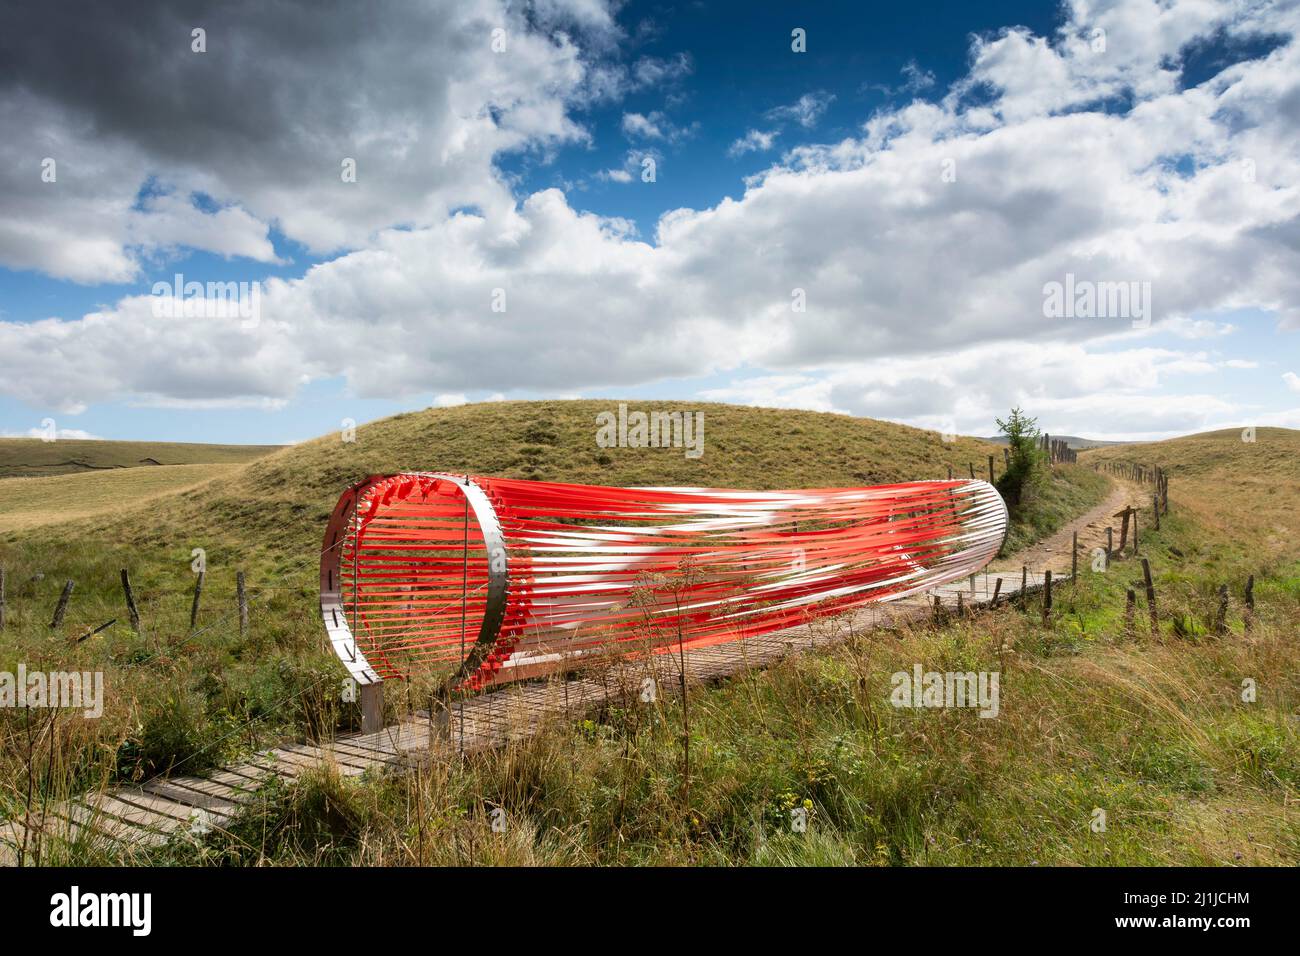 Horizons Kunst und Natur in Sancy 2020. Oszillationen von Axelle Verglas und Maxime Cosson, Puy de Dome, Auvergne Rhone Alpes, Frankreich Stockfoto